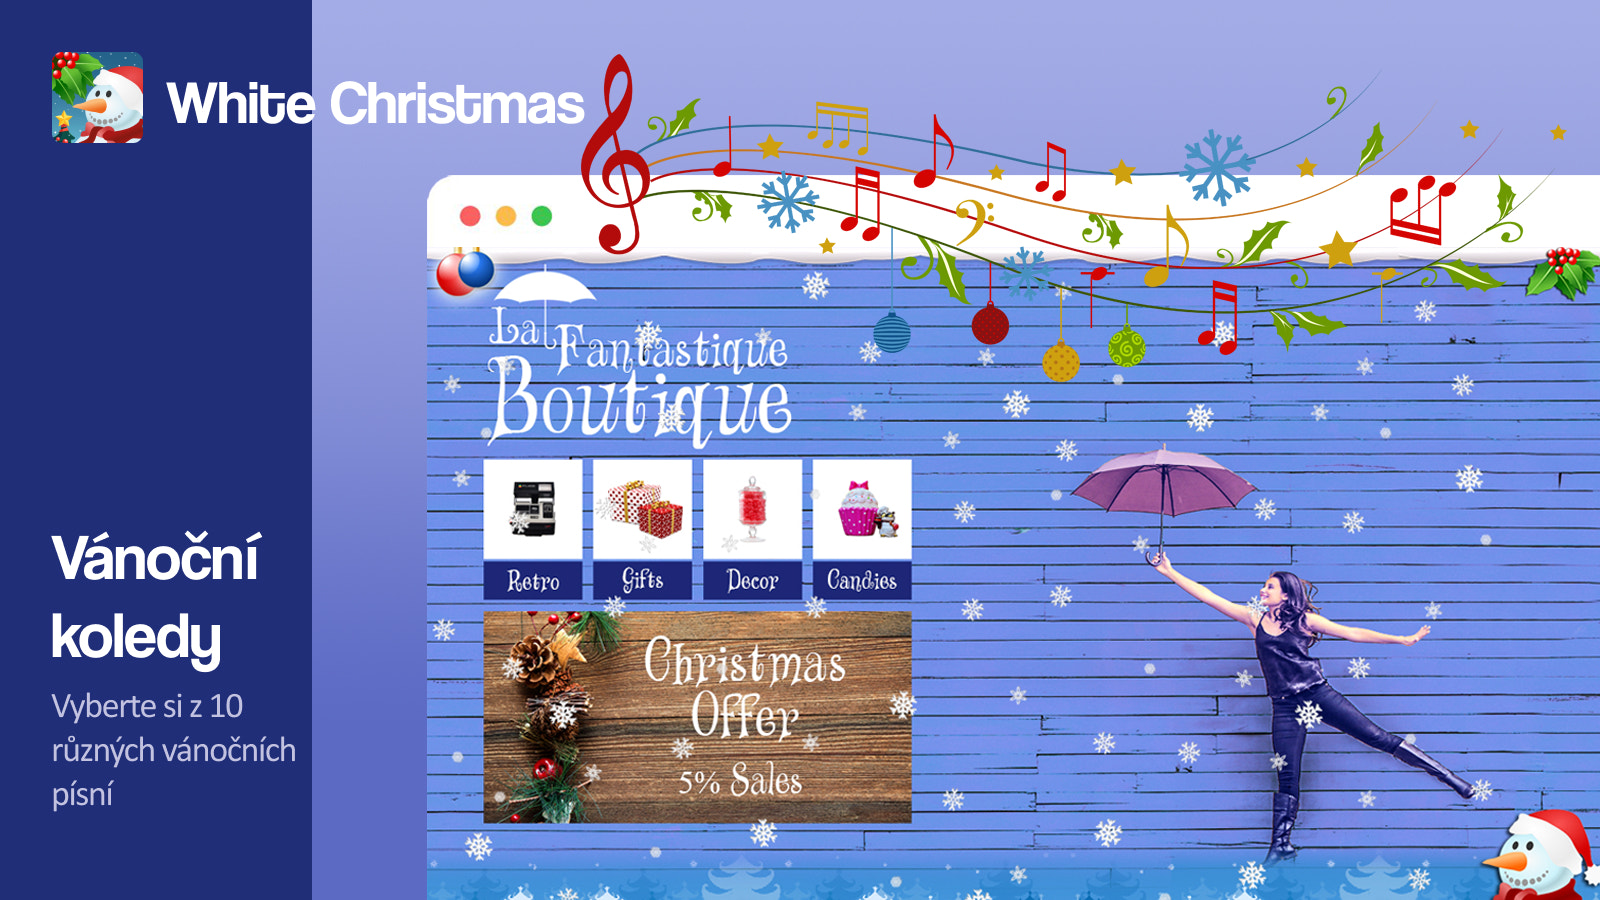 Vyberte si ze deseti různých vánočních písní